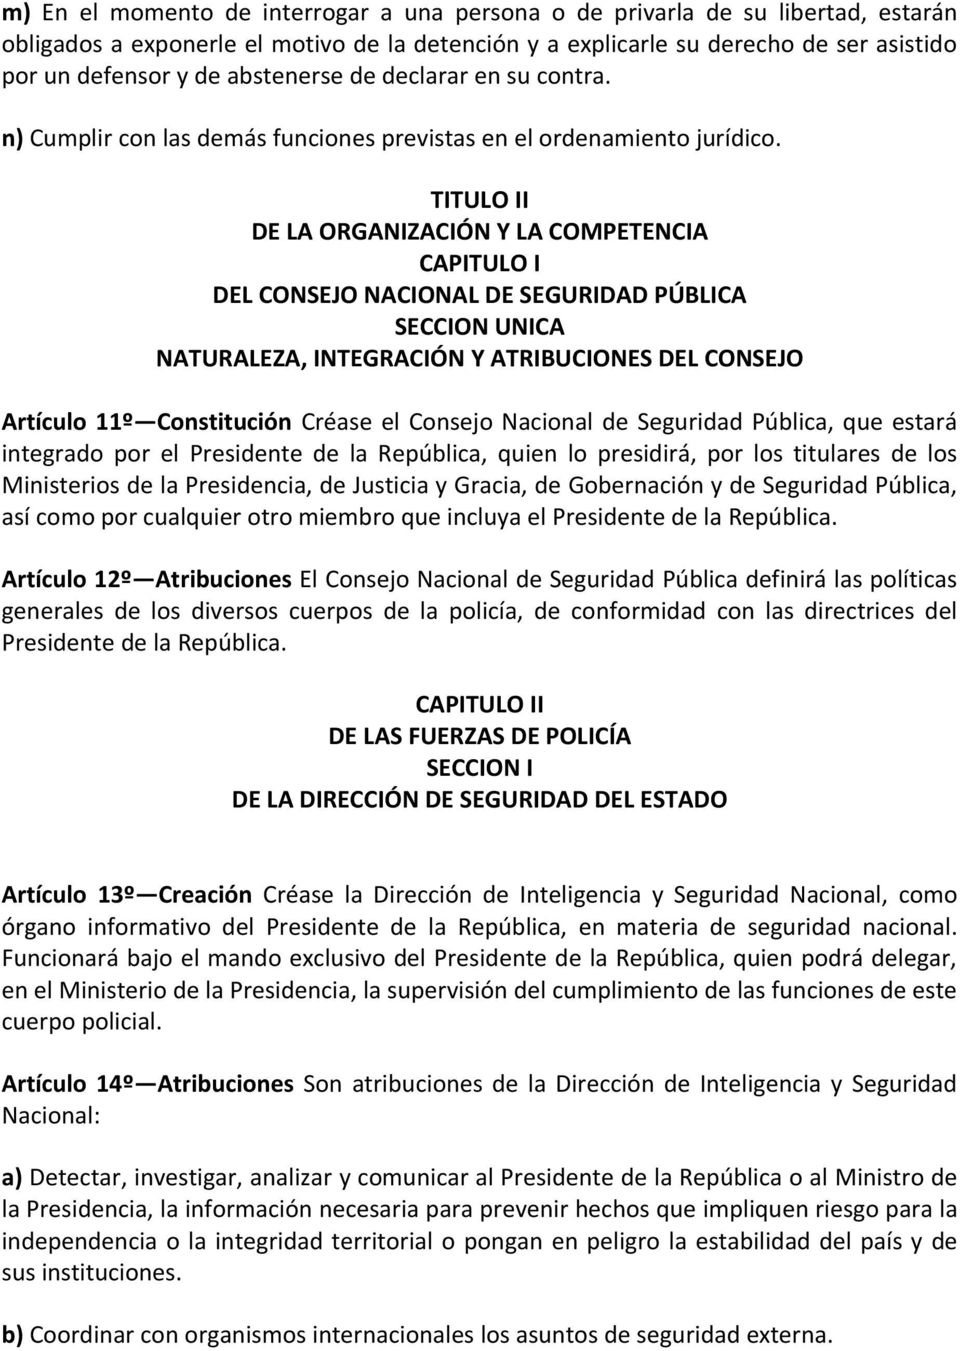 TITULO II DE LA ORGANIZACIÓN Y LA COMPETENCIA CAPITULO I DEL CONSEJO NACIONAL DE SEGURIDAD PÚBLICA SECCION UNICA NATURALEZA, INTEGRACIÓN Y ATRIBUCIONES DEL CONSEJO Artículo 11º Constitución Créase el